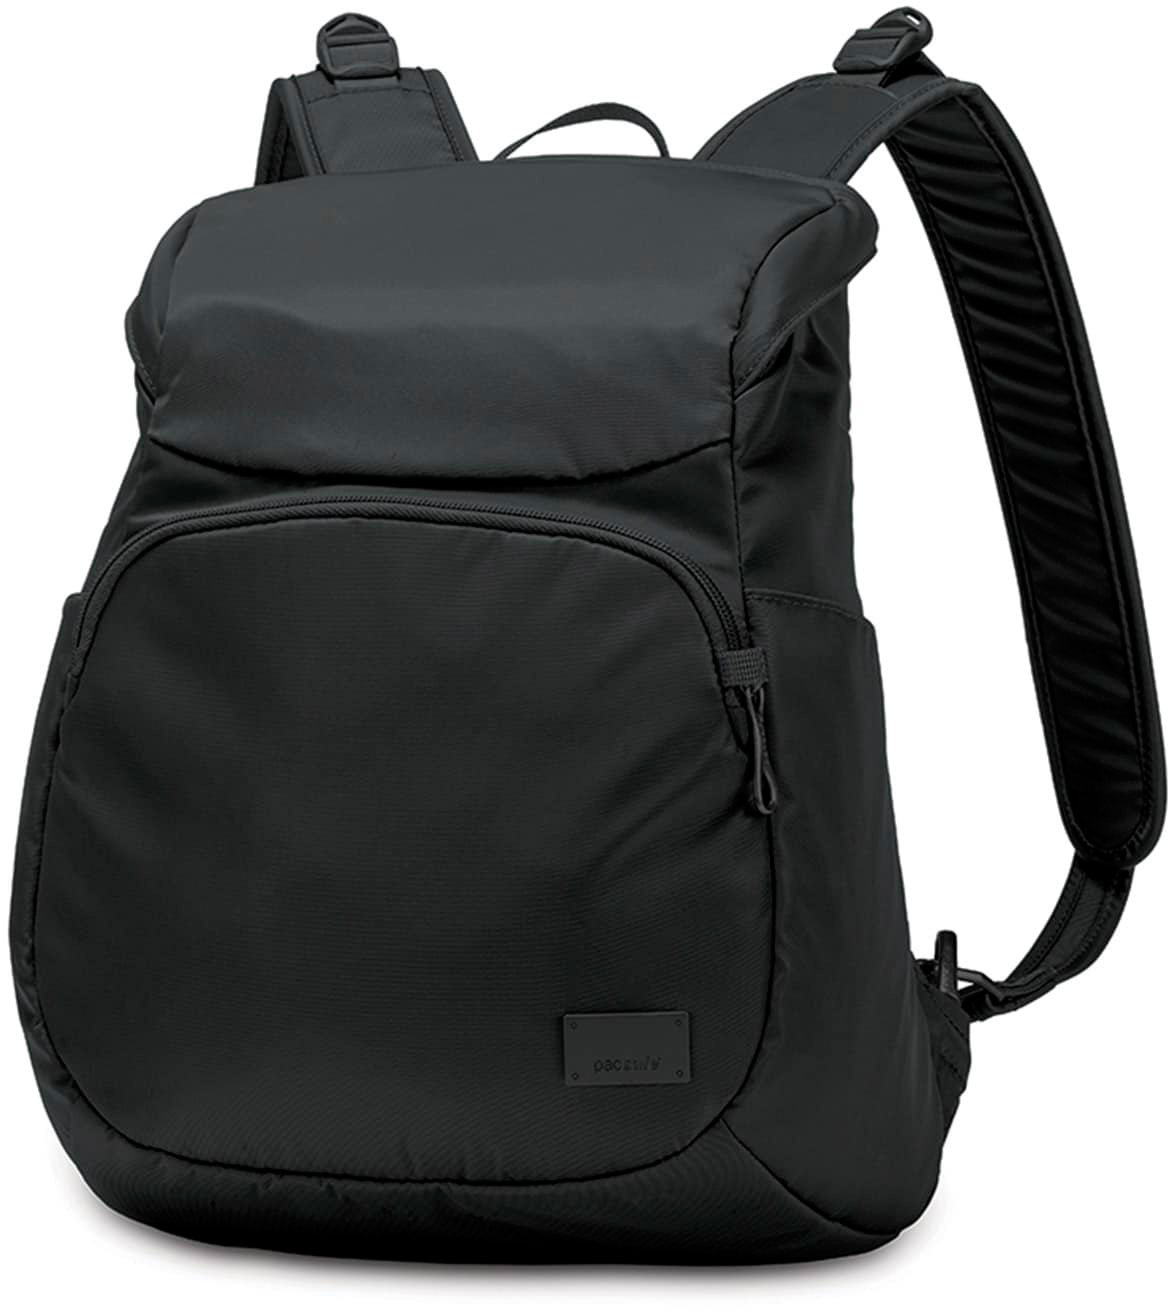 Рюкзак PacSafe Citysafe CS300 (20230100) для ноутбука 11" (Black)